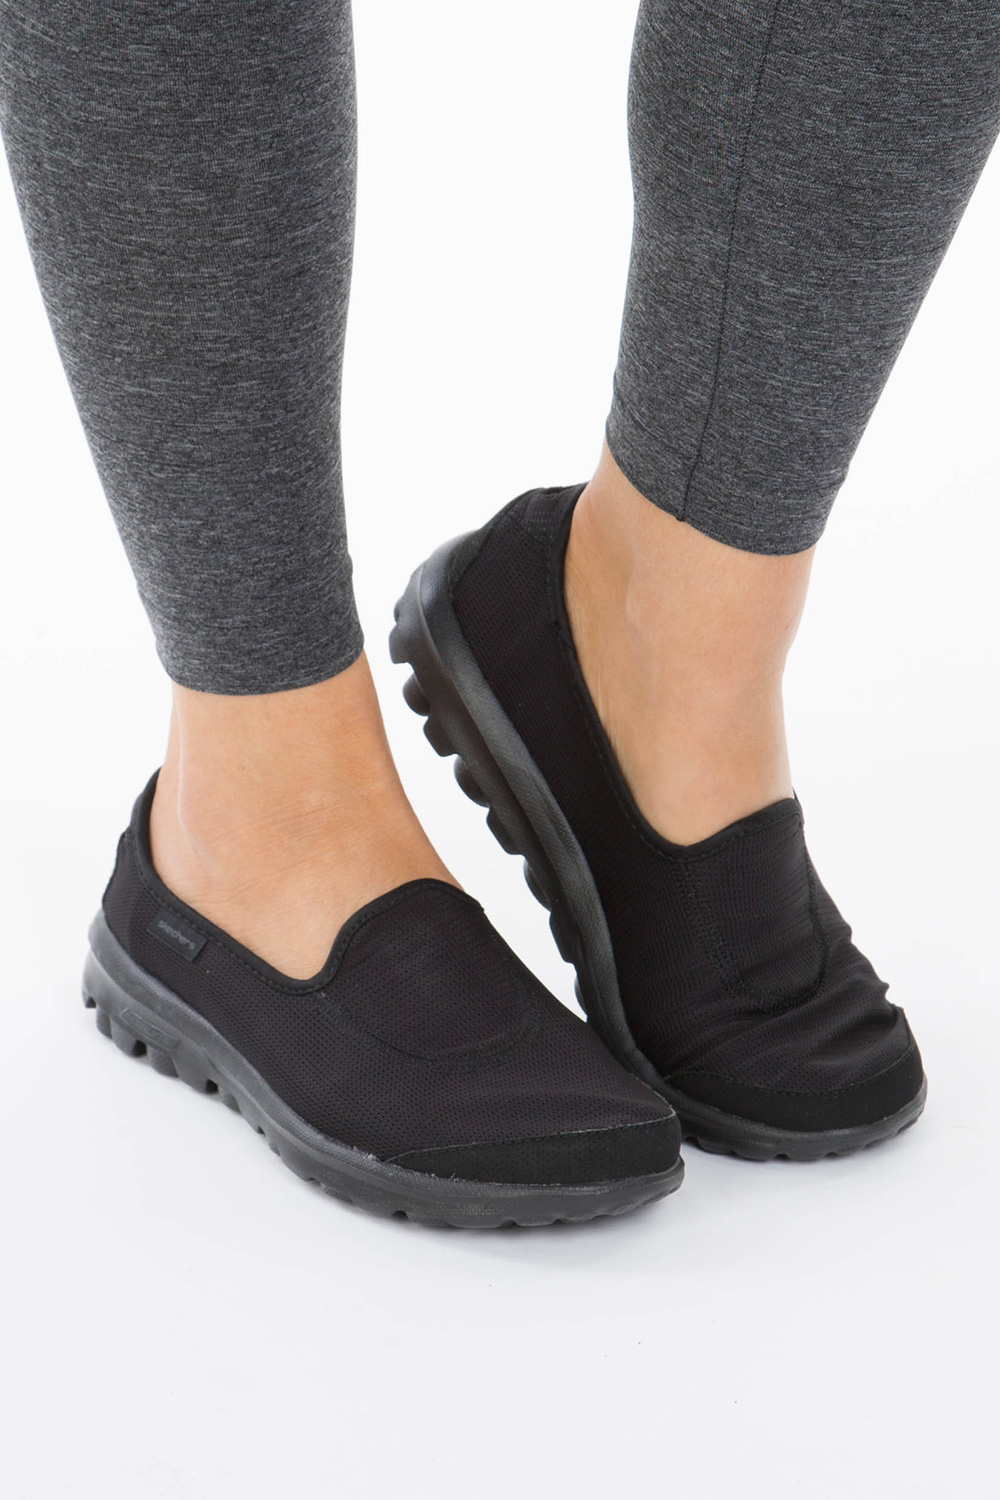 skechers ladies go walk 2 black casual shoes